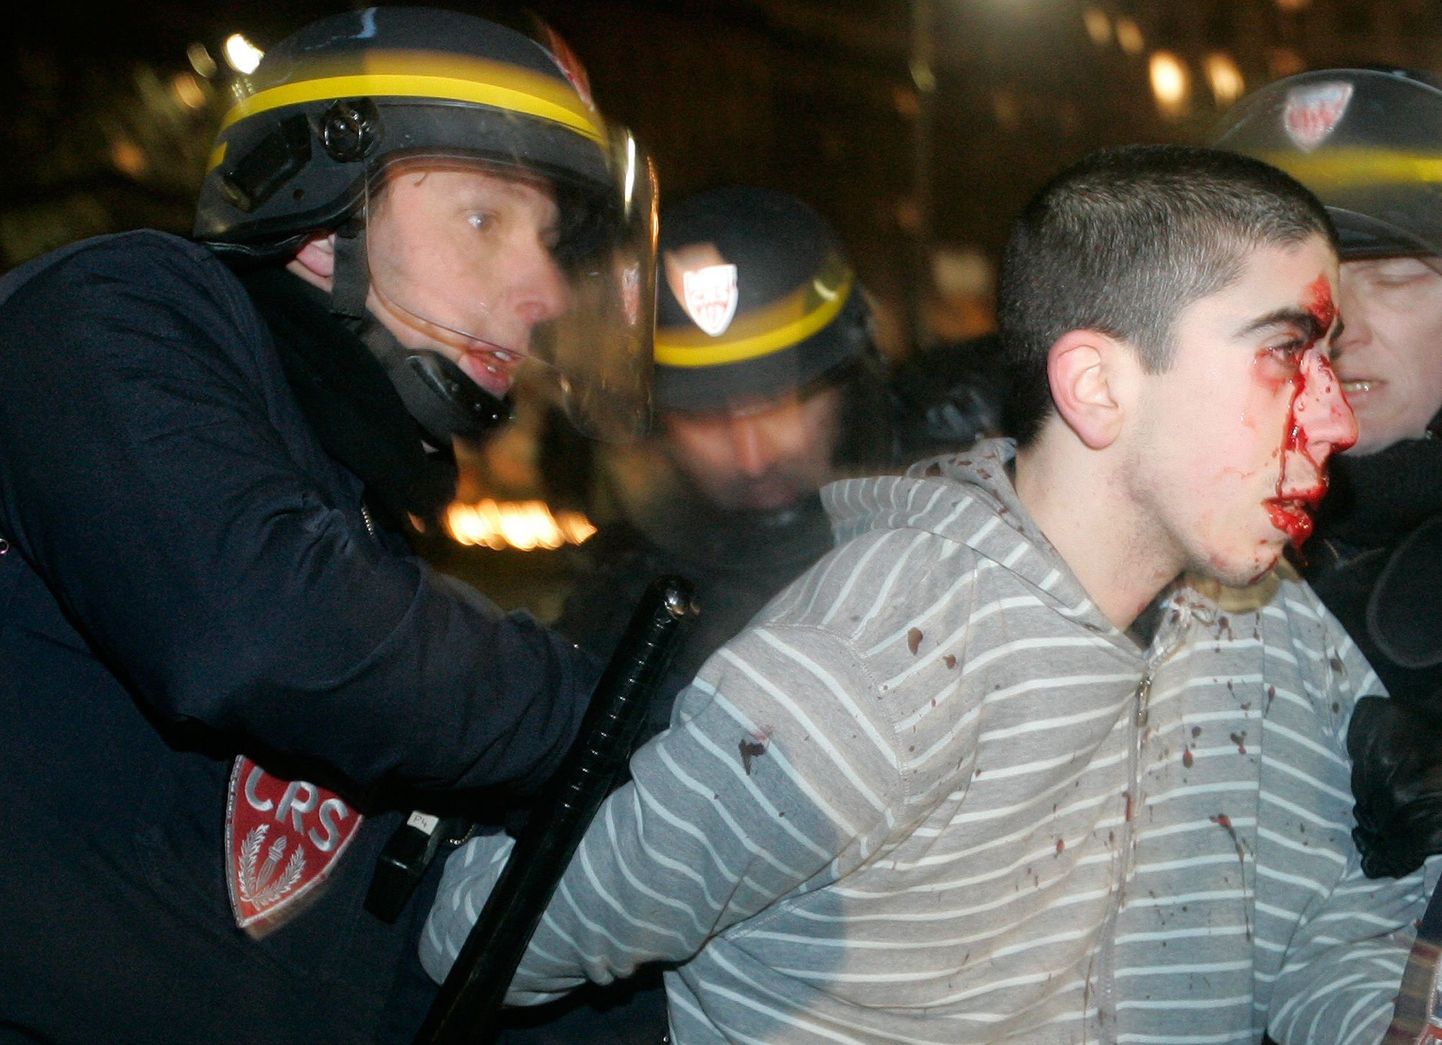 Prantsuse politseinik jaanuaris Pariisis Palestiina-meelset meeleavaldajat vahistamas.